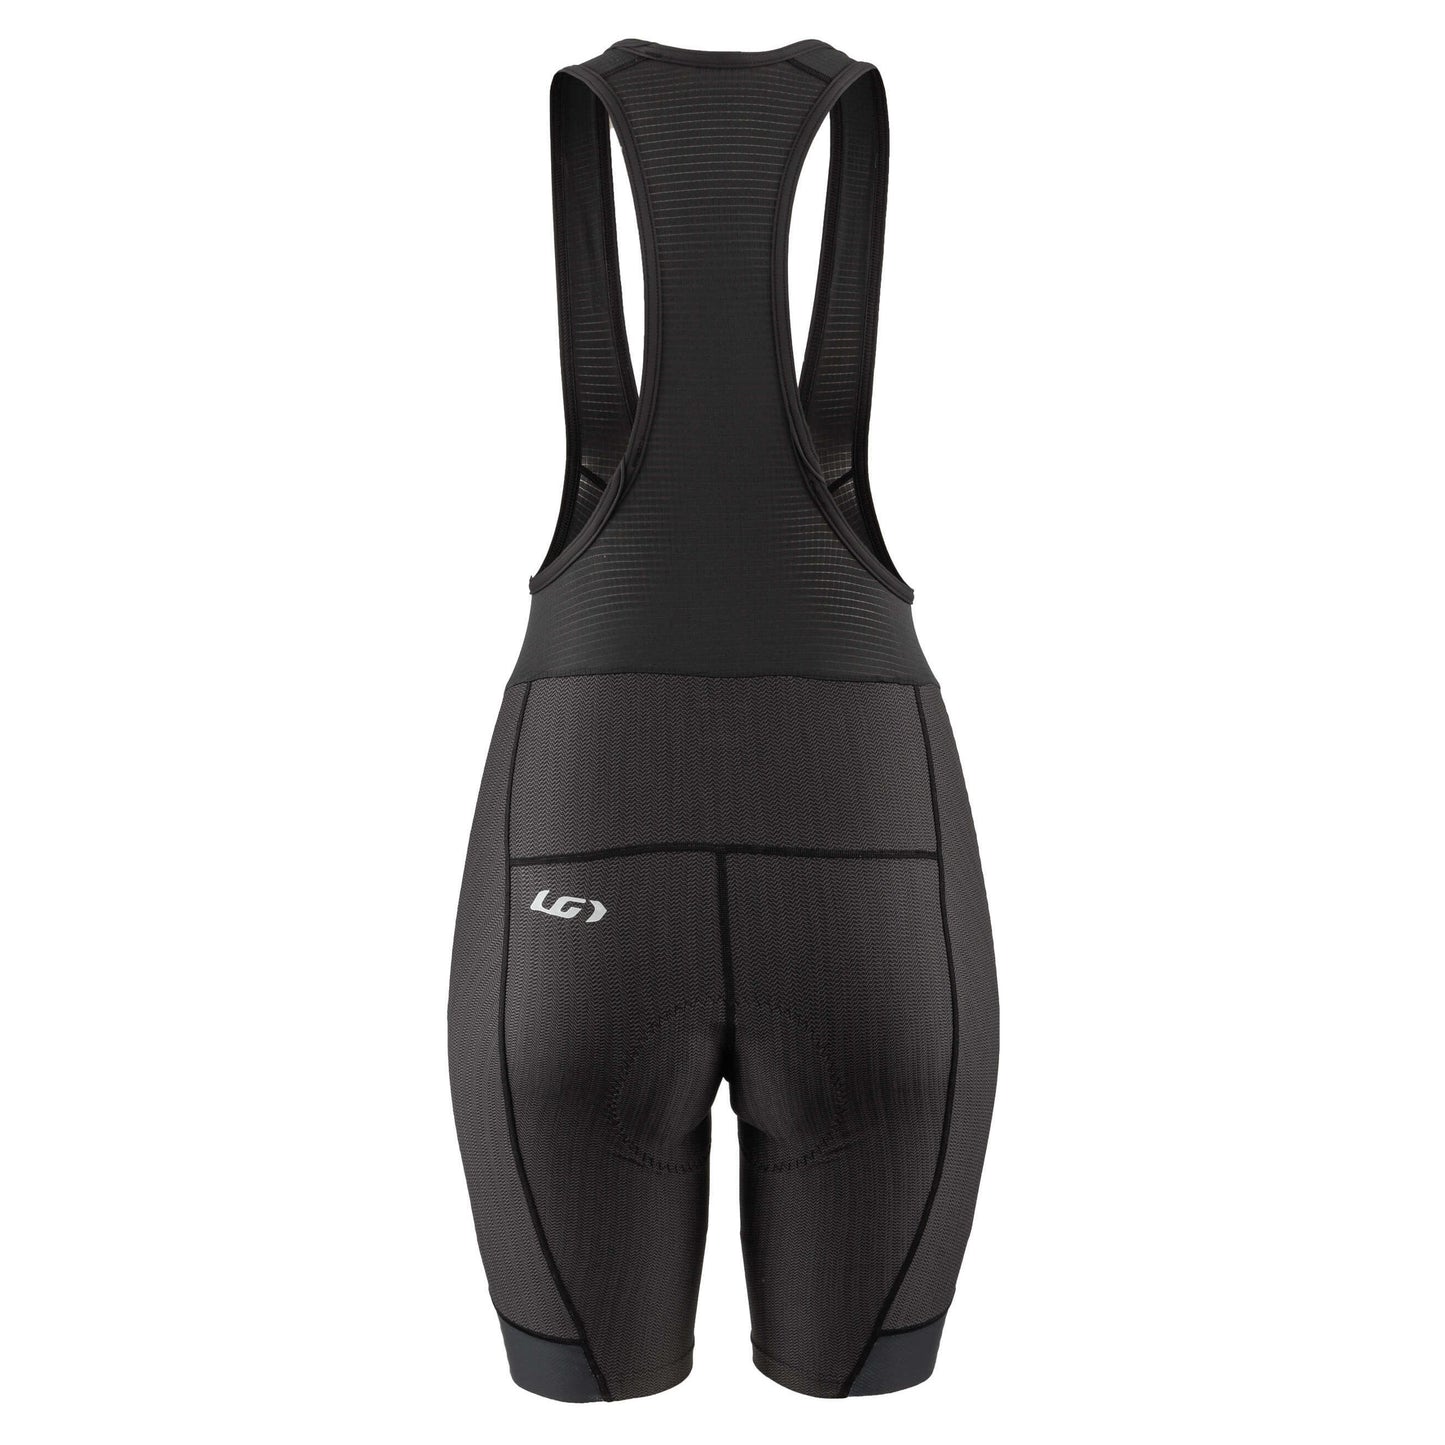 NEW Garneau Fit Sensor Texture Bib Shorts - Black, Women's